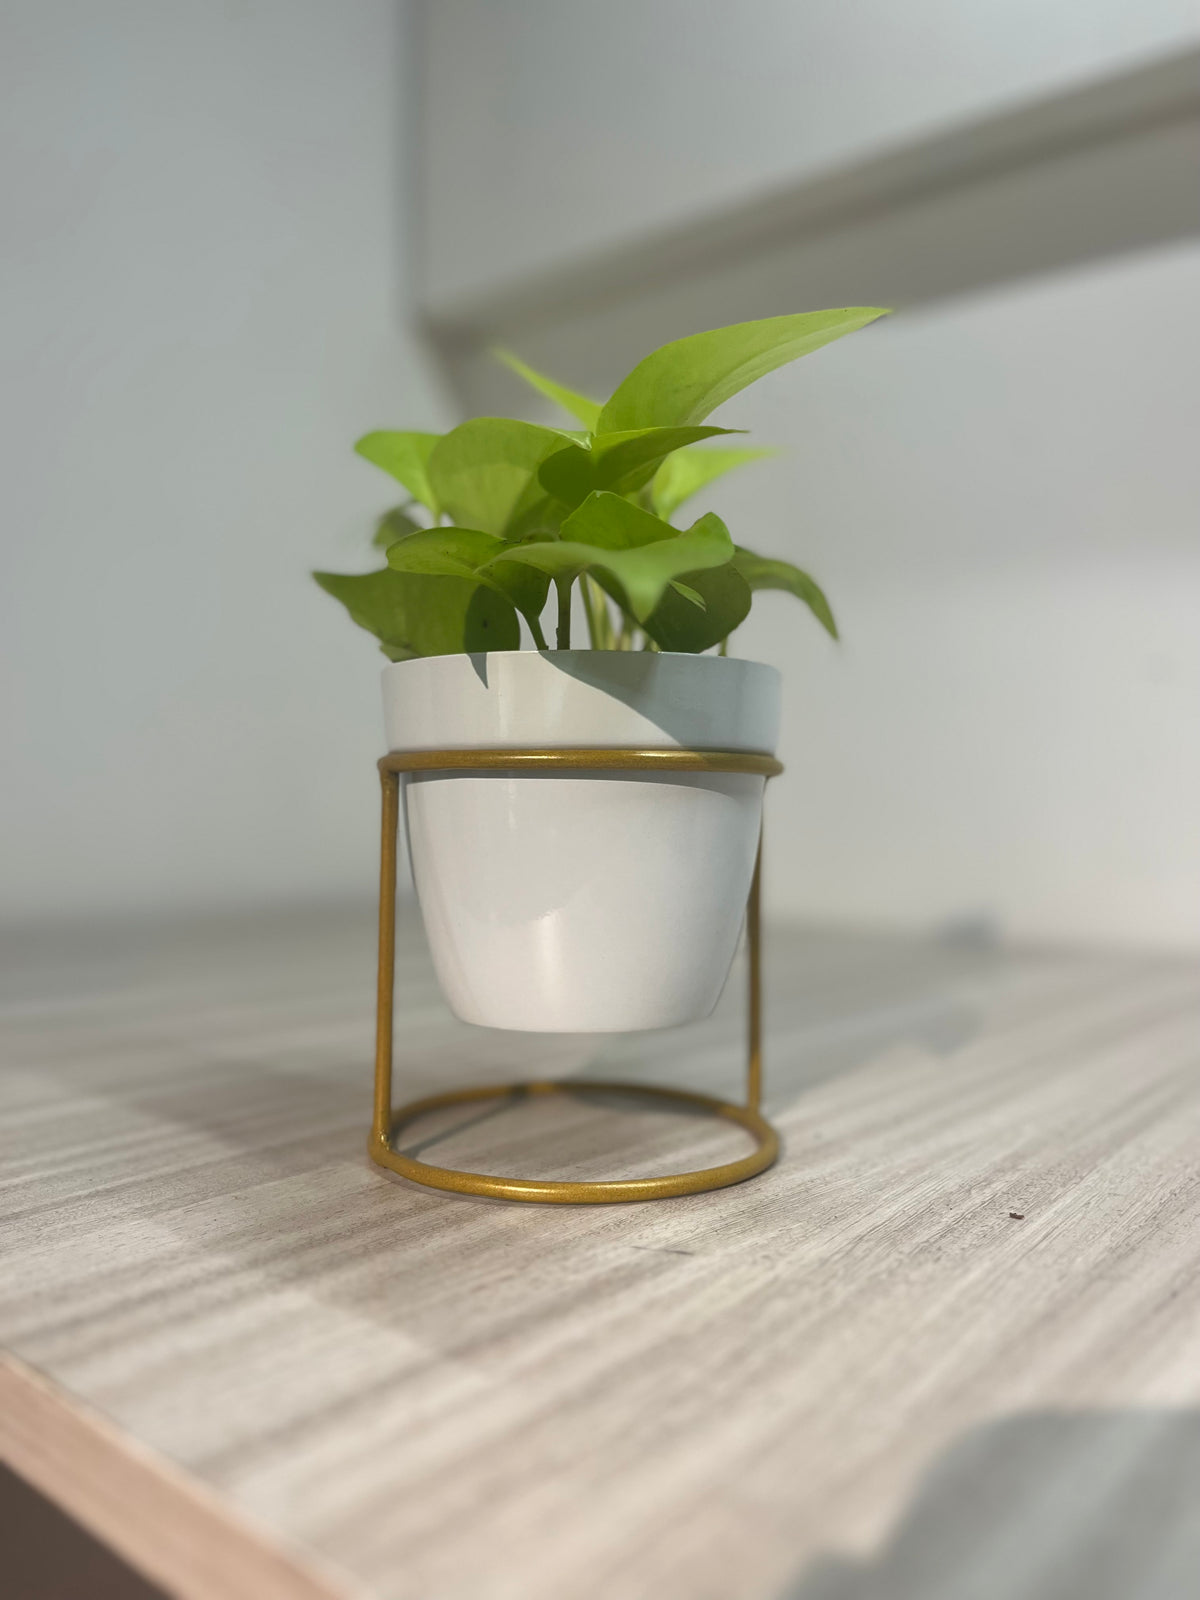 OurBalconyGarden Metal Pot| Home Decor| Display Gift OBG-8